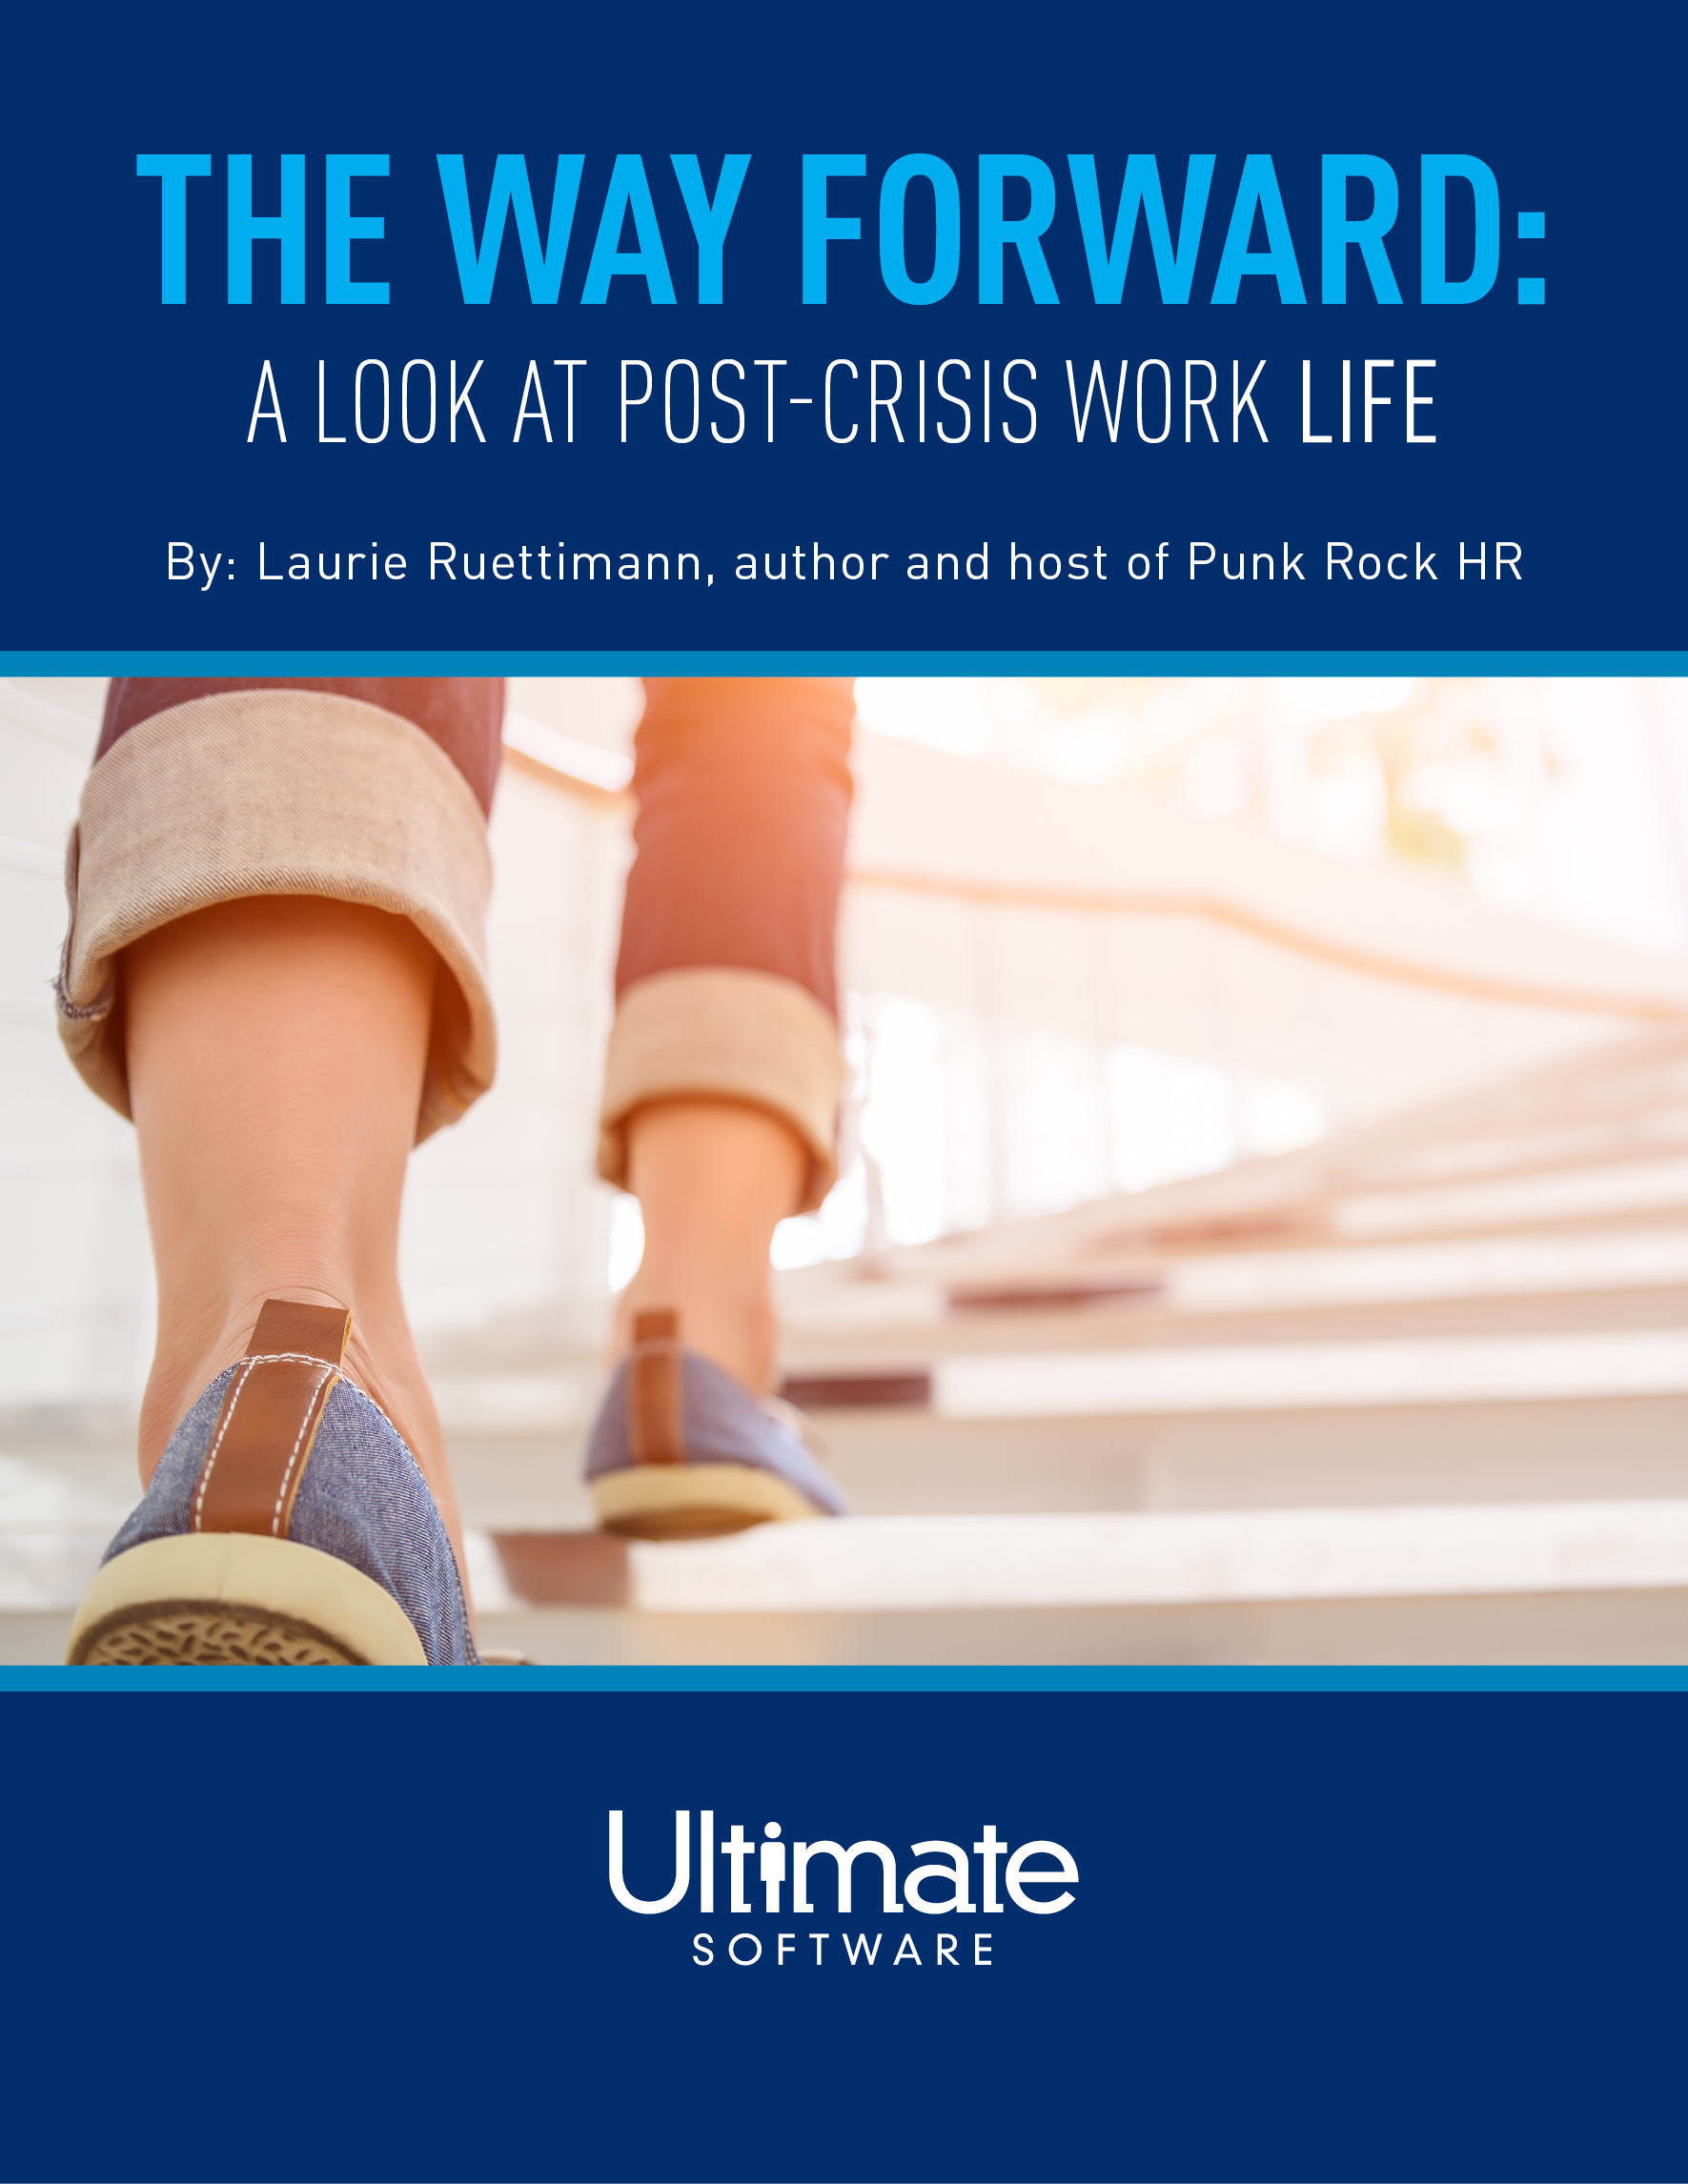 The Way Forward: A Look at Post-Crisis Work Life